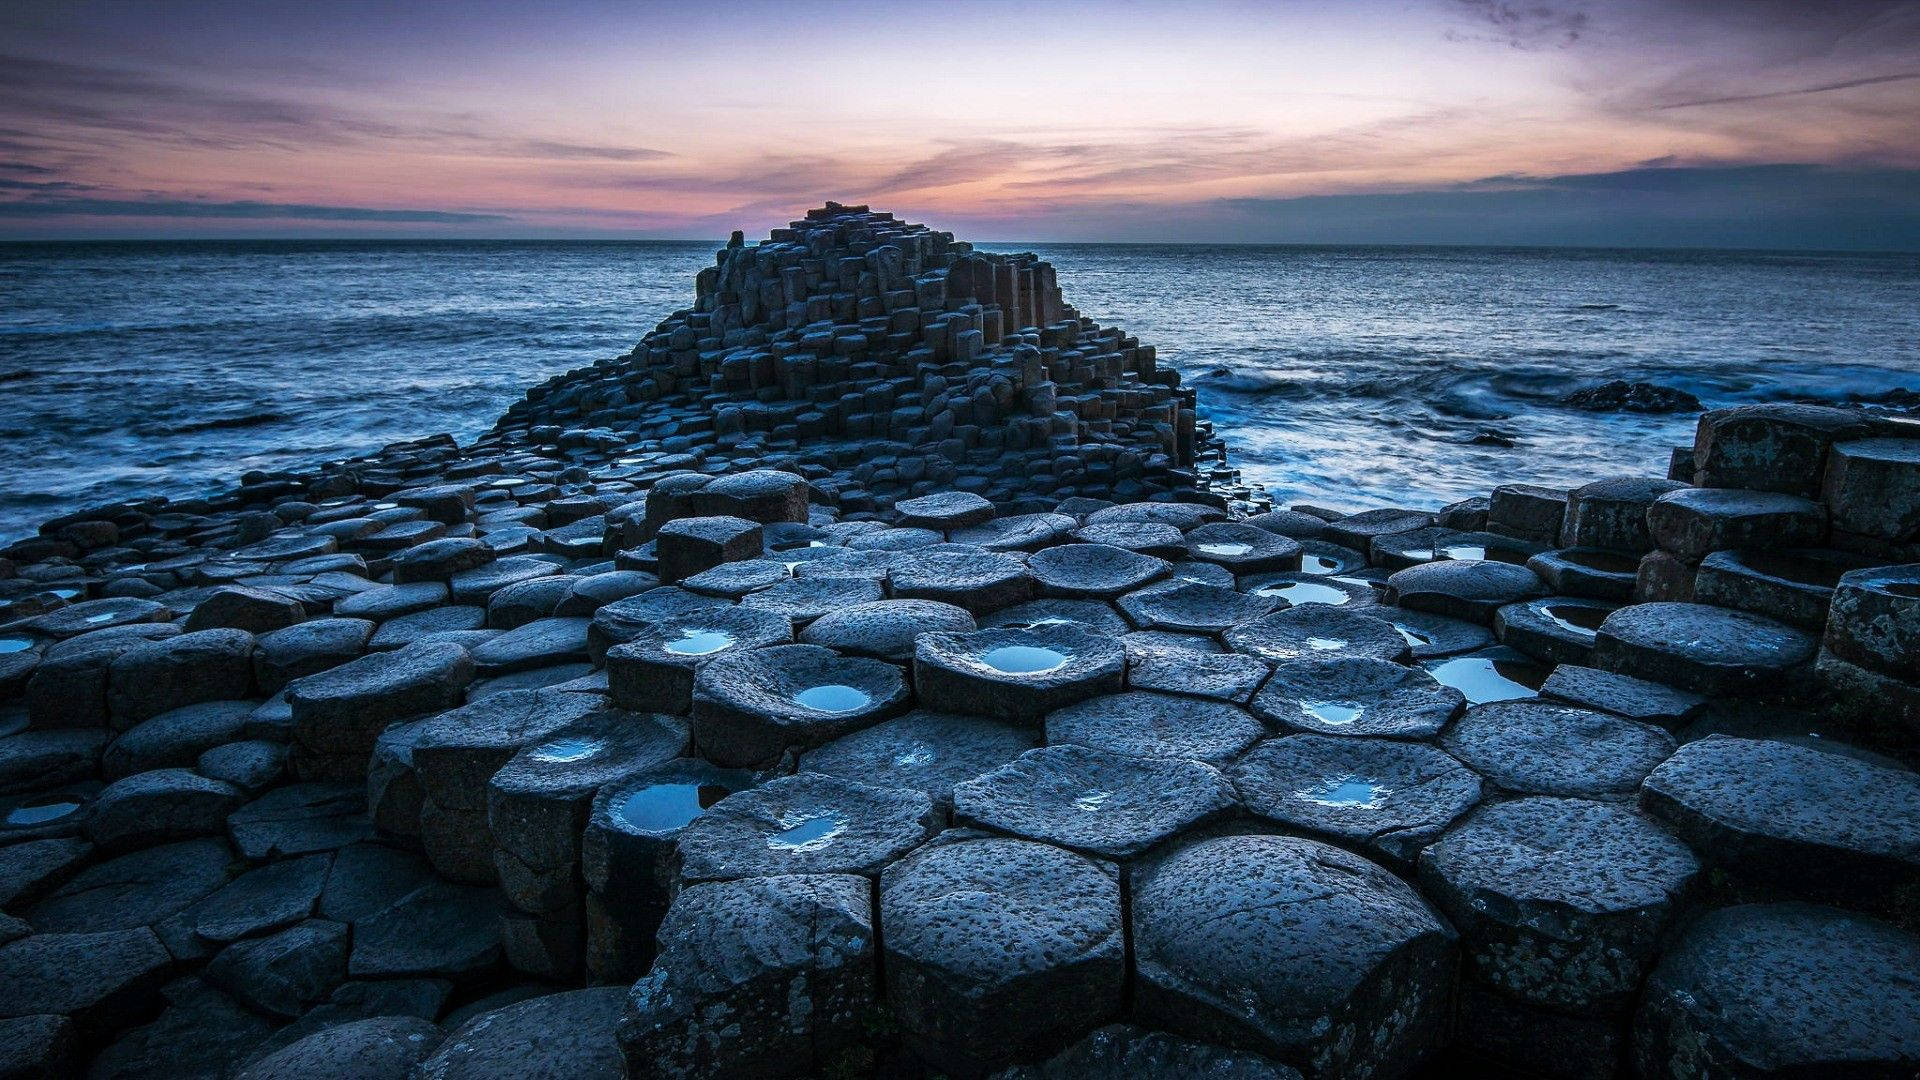 Tải ảnh nền Ireland miễn phí: Khám phá vẻ đẹp của đất nước Ireland với những bức ảnh nền miễn phí. Tải xuống và sử dụng chúng để mang lại cảm giác thư giãn và yên tĩnh cho không gian làm việc của bạn.